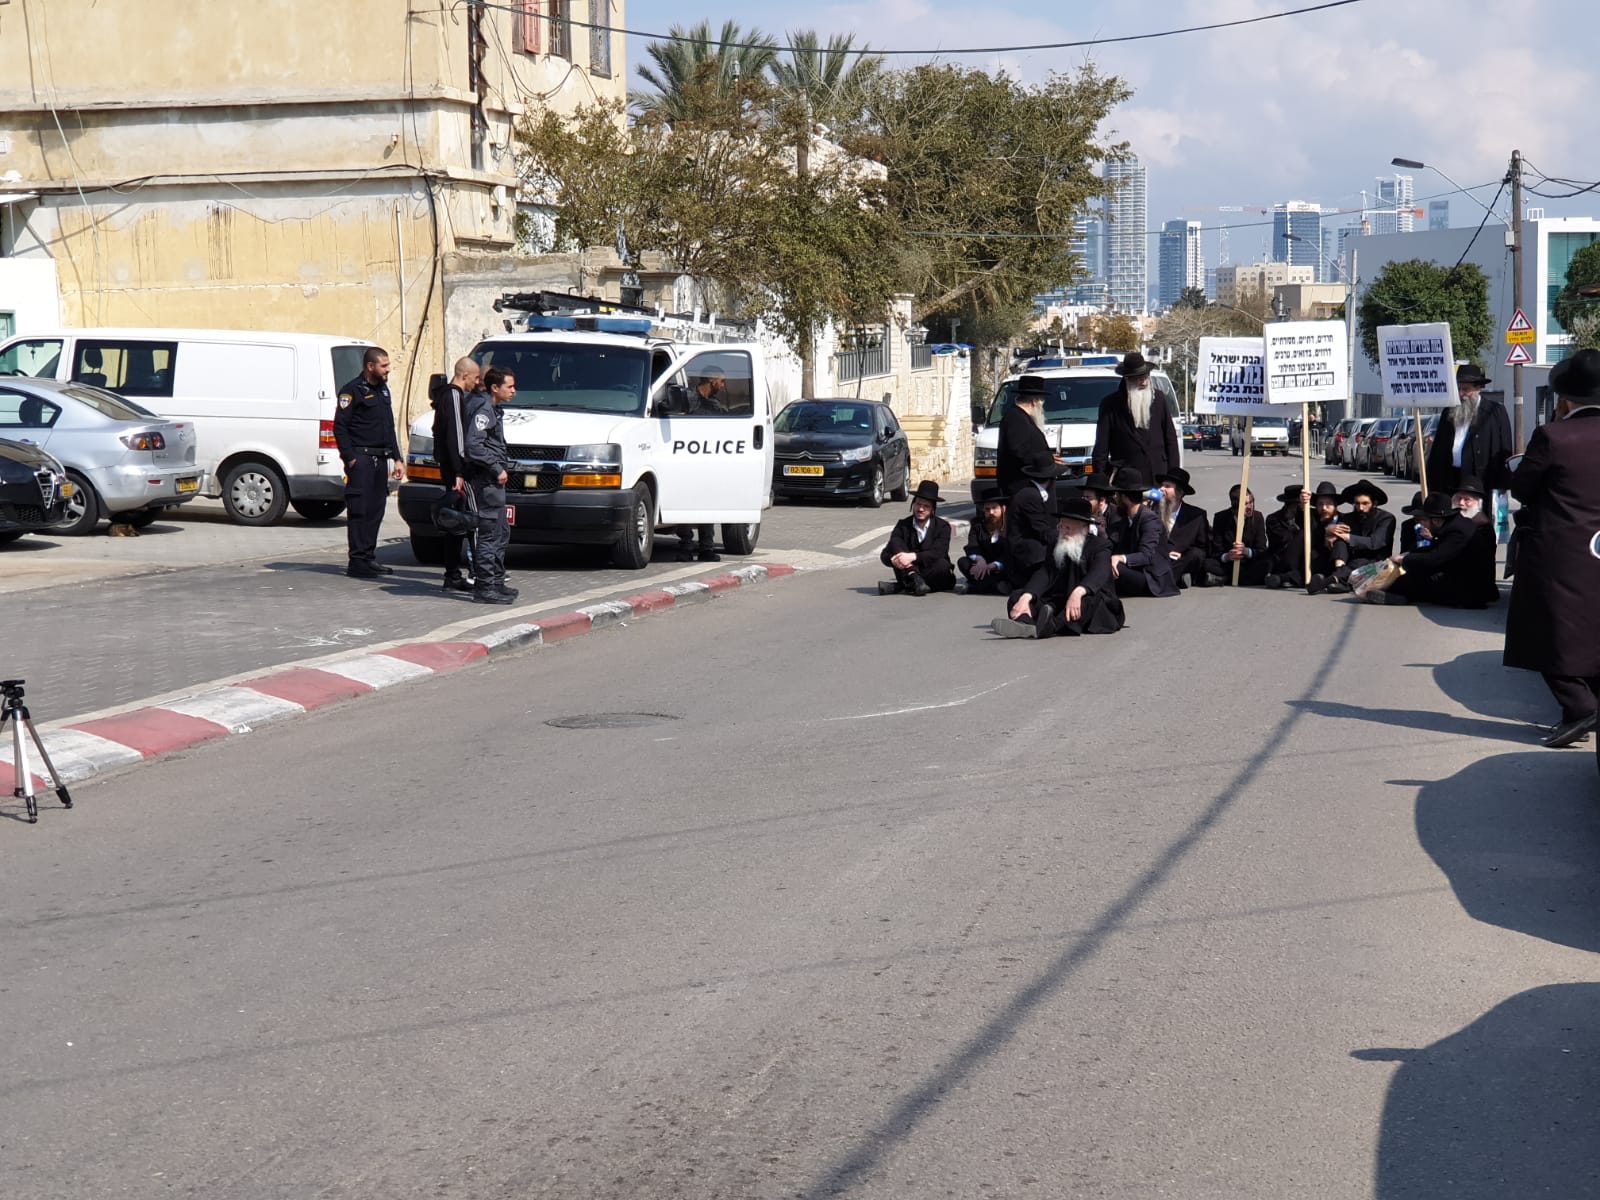  فيديو: الخارديم يغلقون شارع شيفتي يسرائيل بيافا والشرطة تعيد فتحه أمام حركة السير